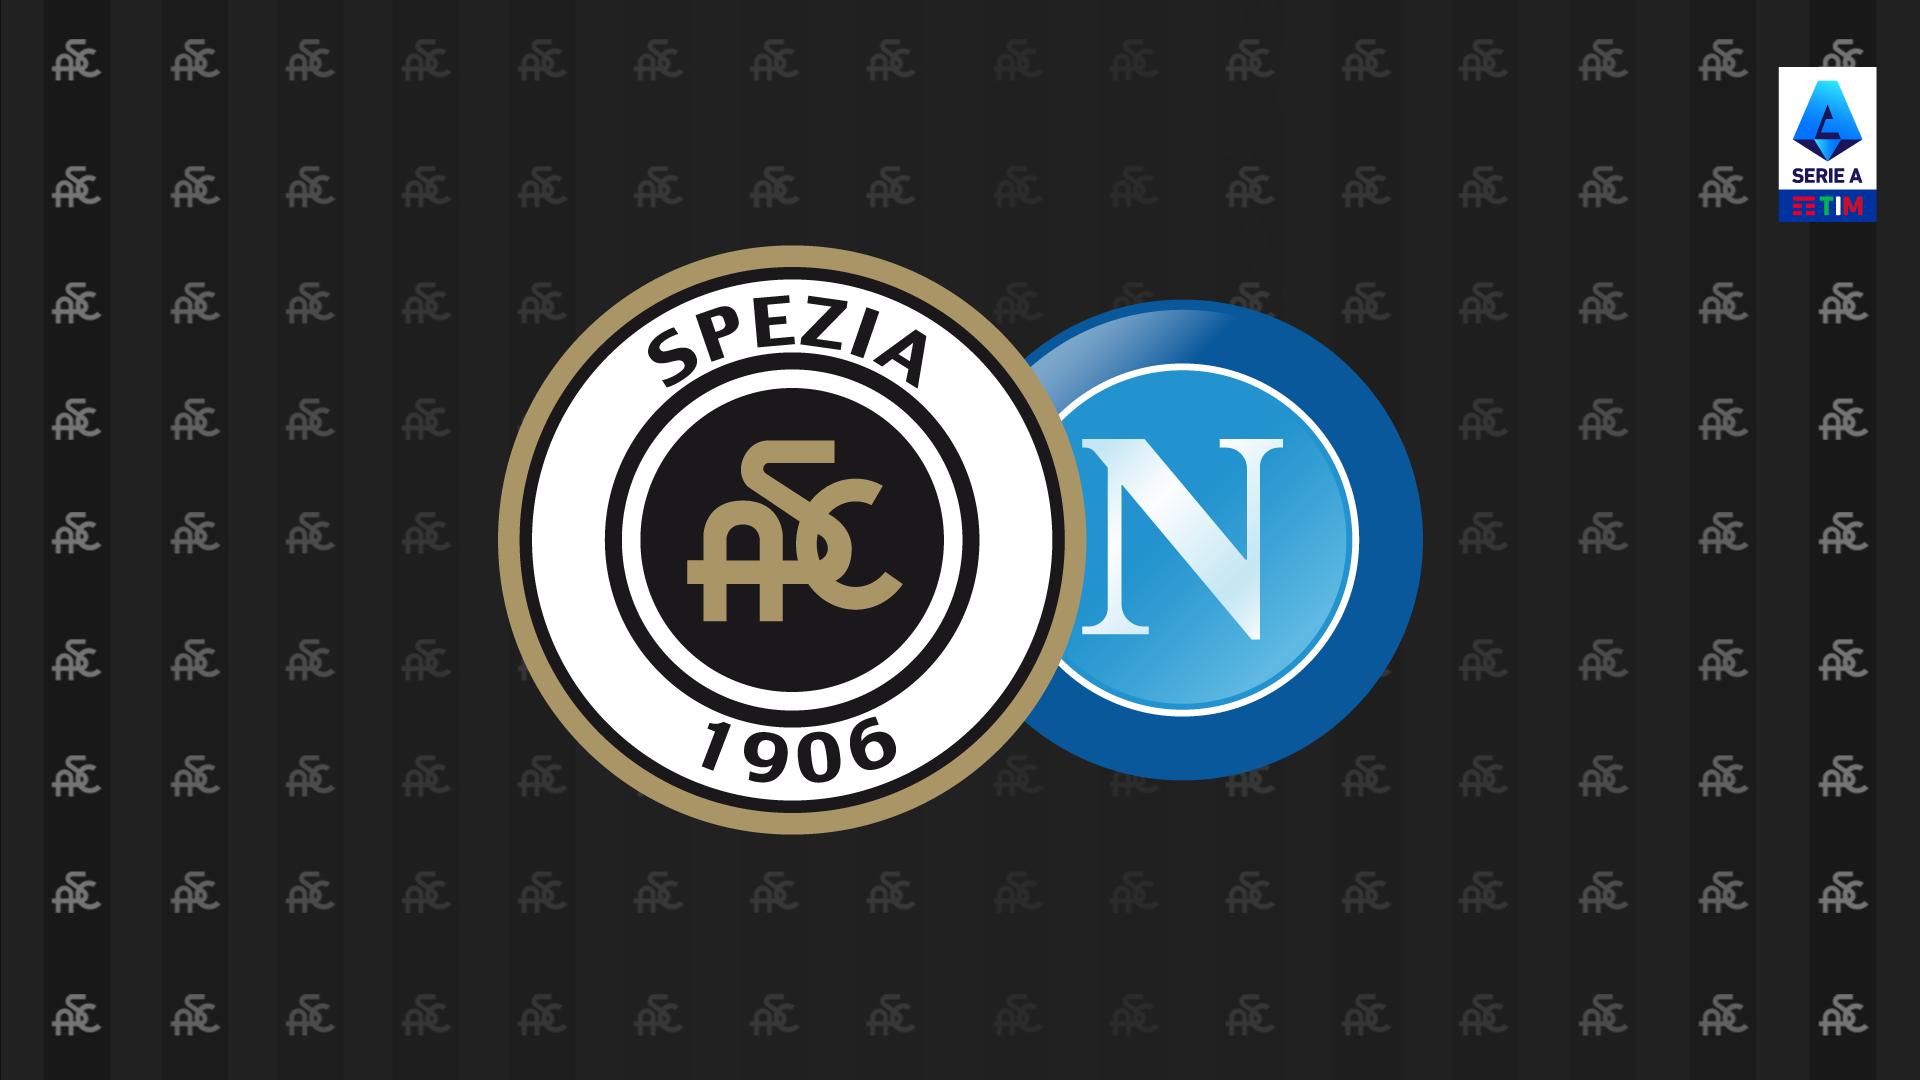 Serie A TIM 21/22: Spezia-Napoli 0-3